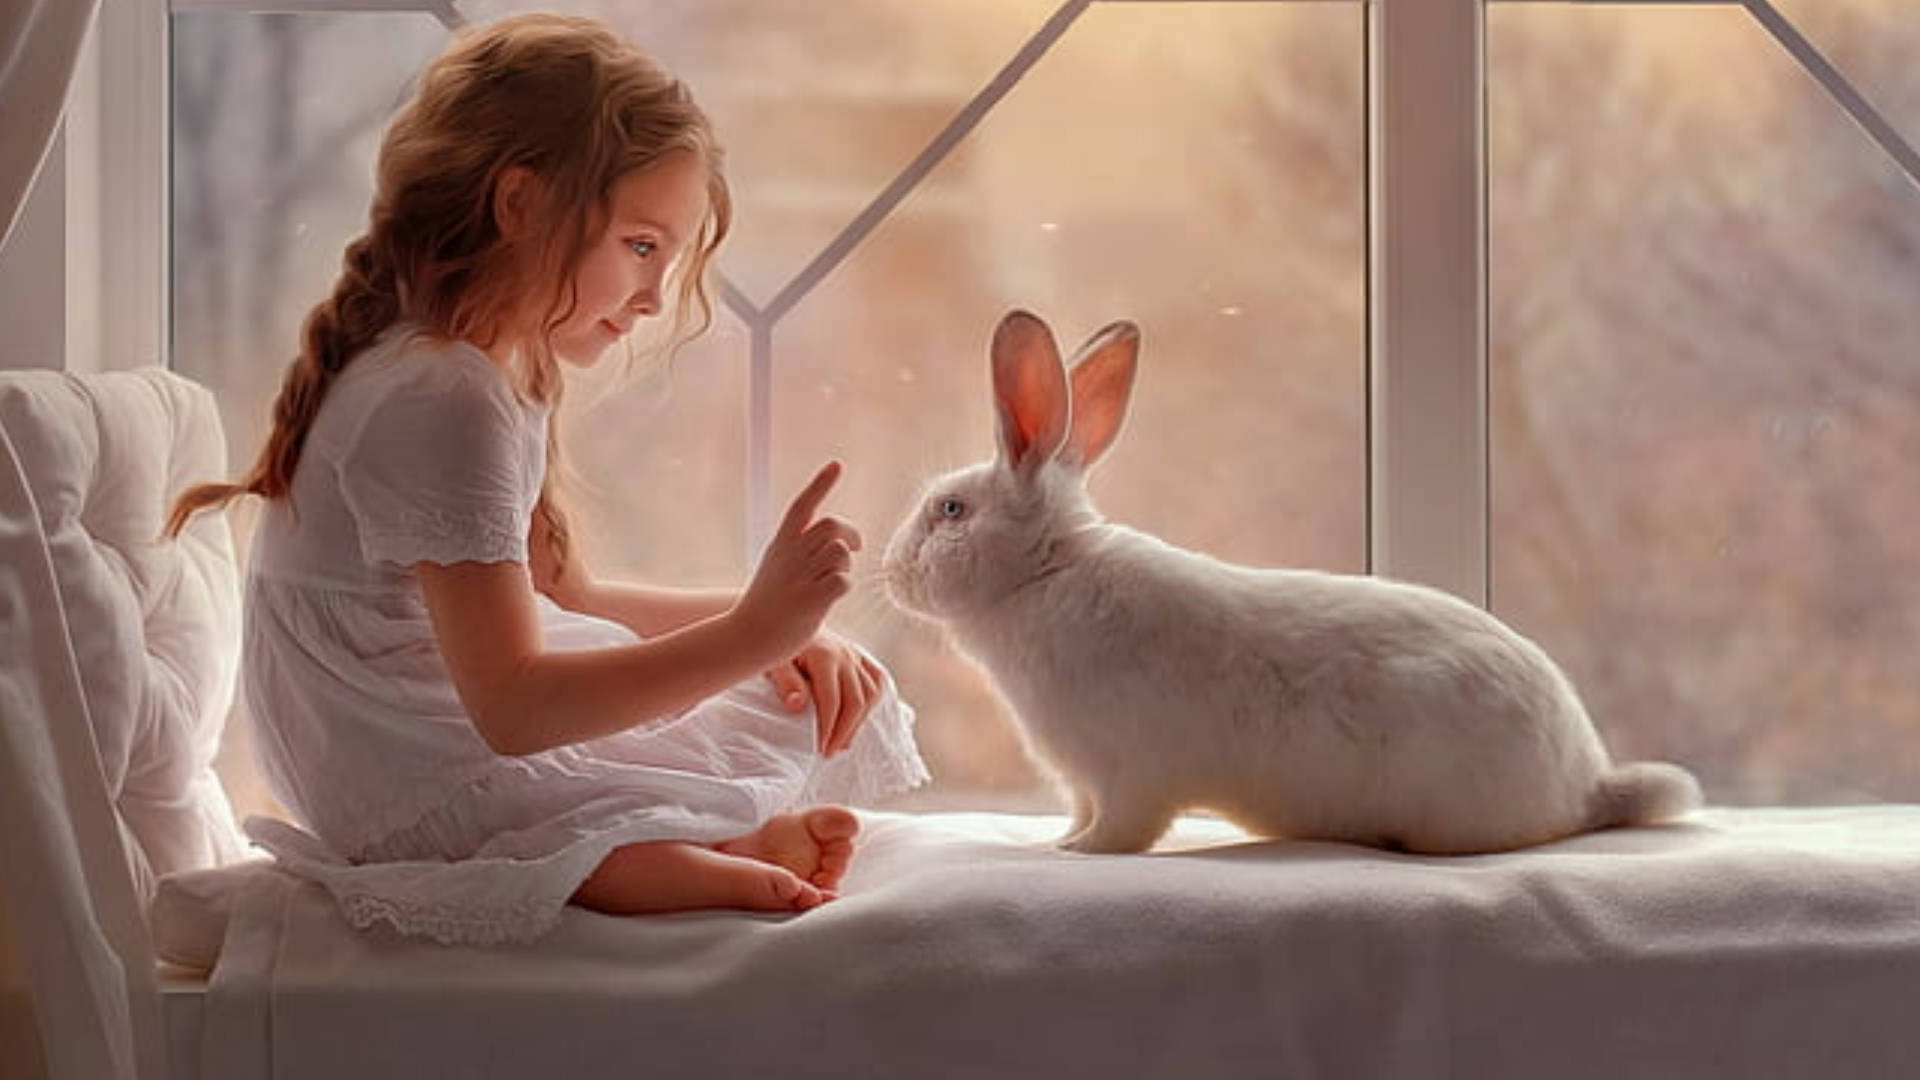 Estéticade Un Conejo Blanco Y Una Chica Fondo de pantalla